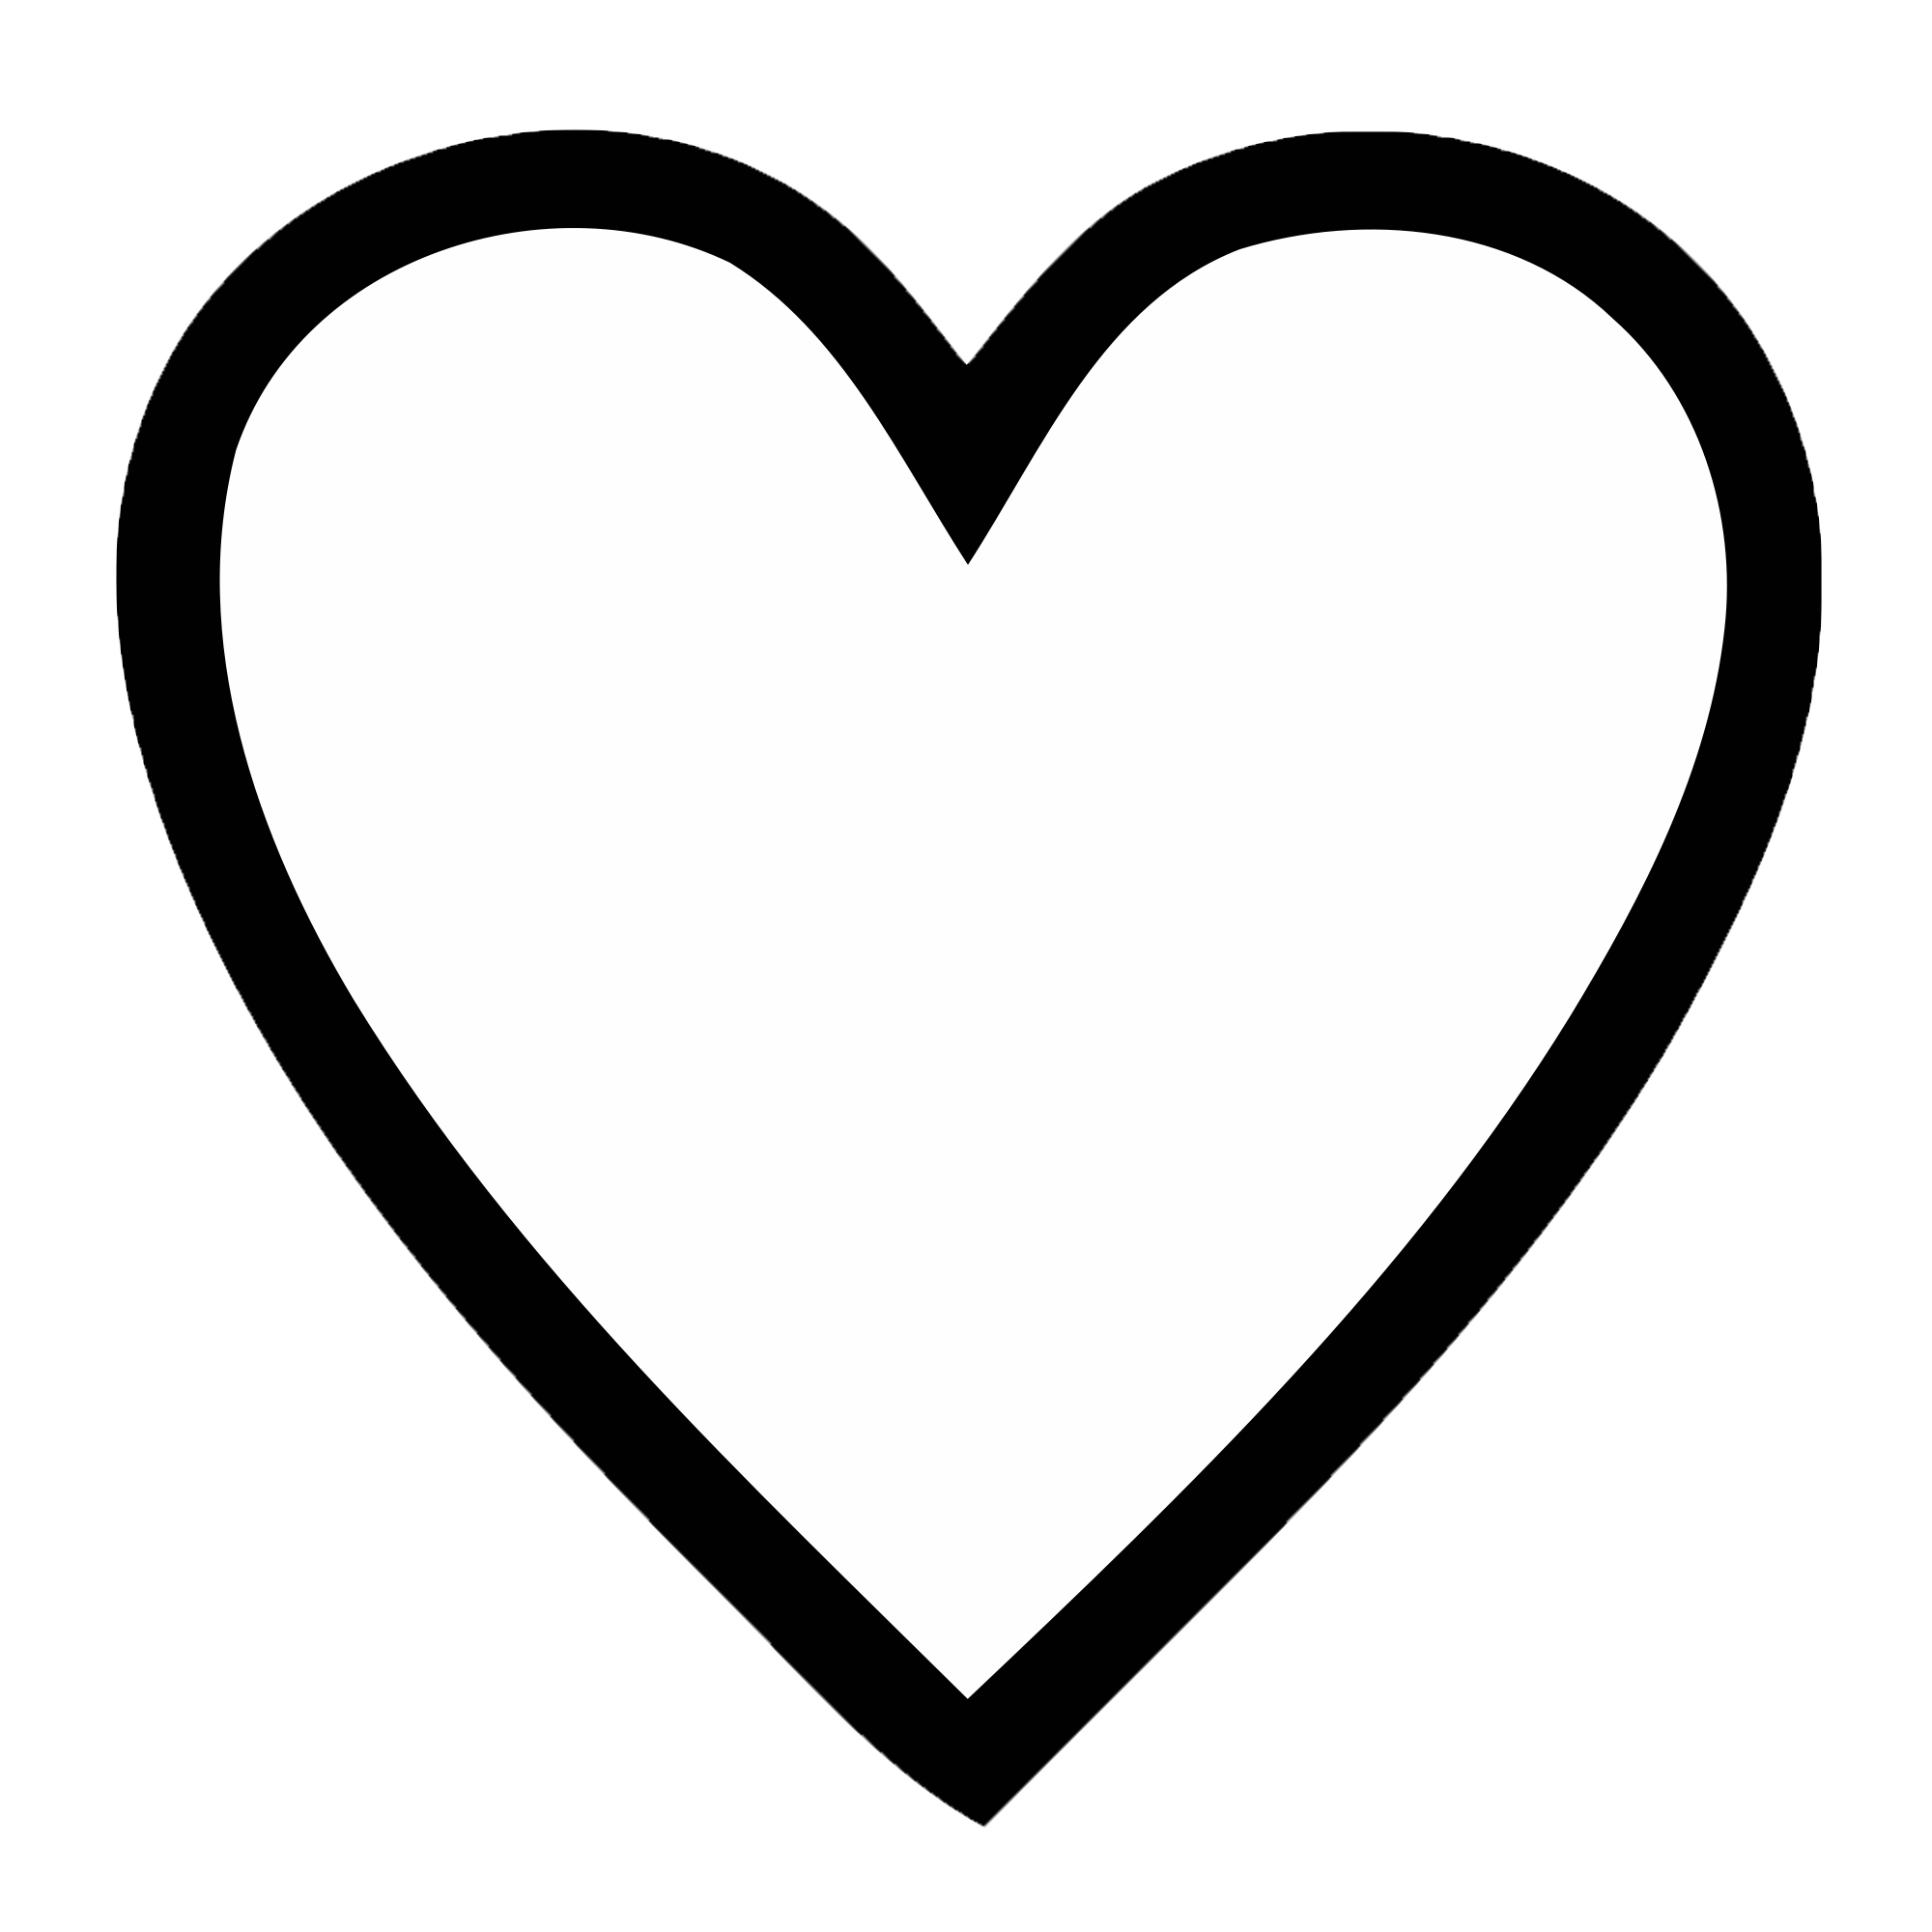 Heart logo clipart symbol. Hearts transparent png